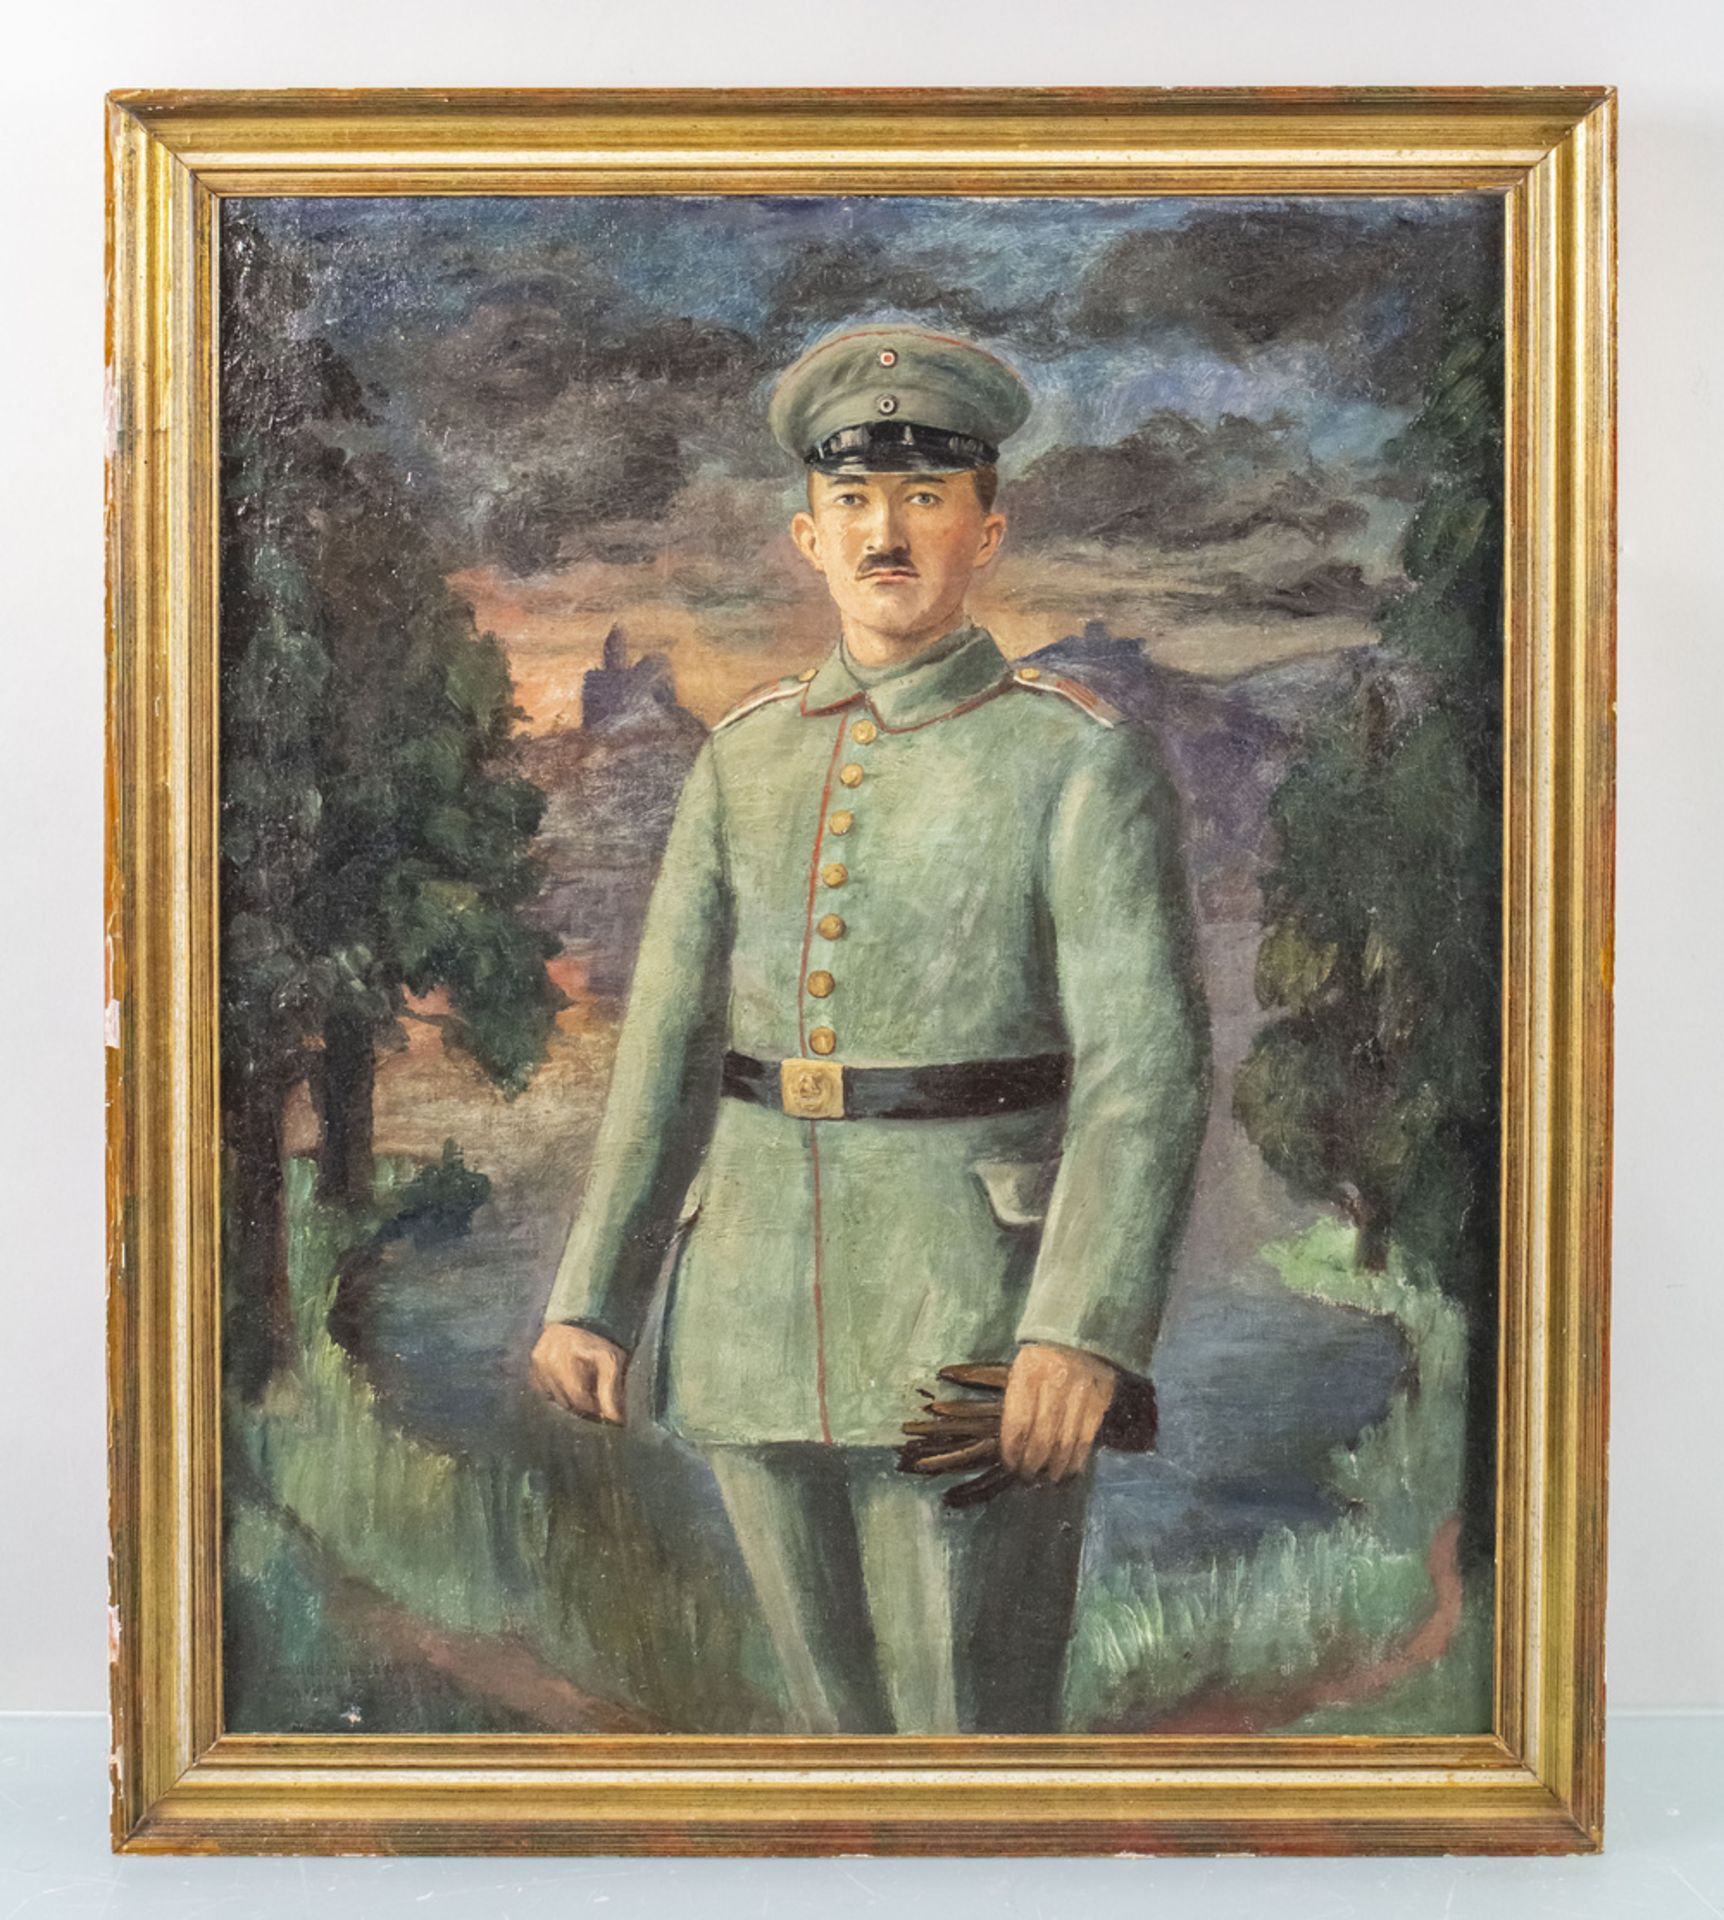 Gemälde eines Soldaten / A painting of a soldier, vermutlich 1. Weltkrieg - Bild 2 aus 5